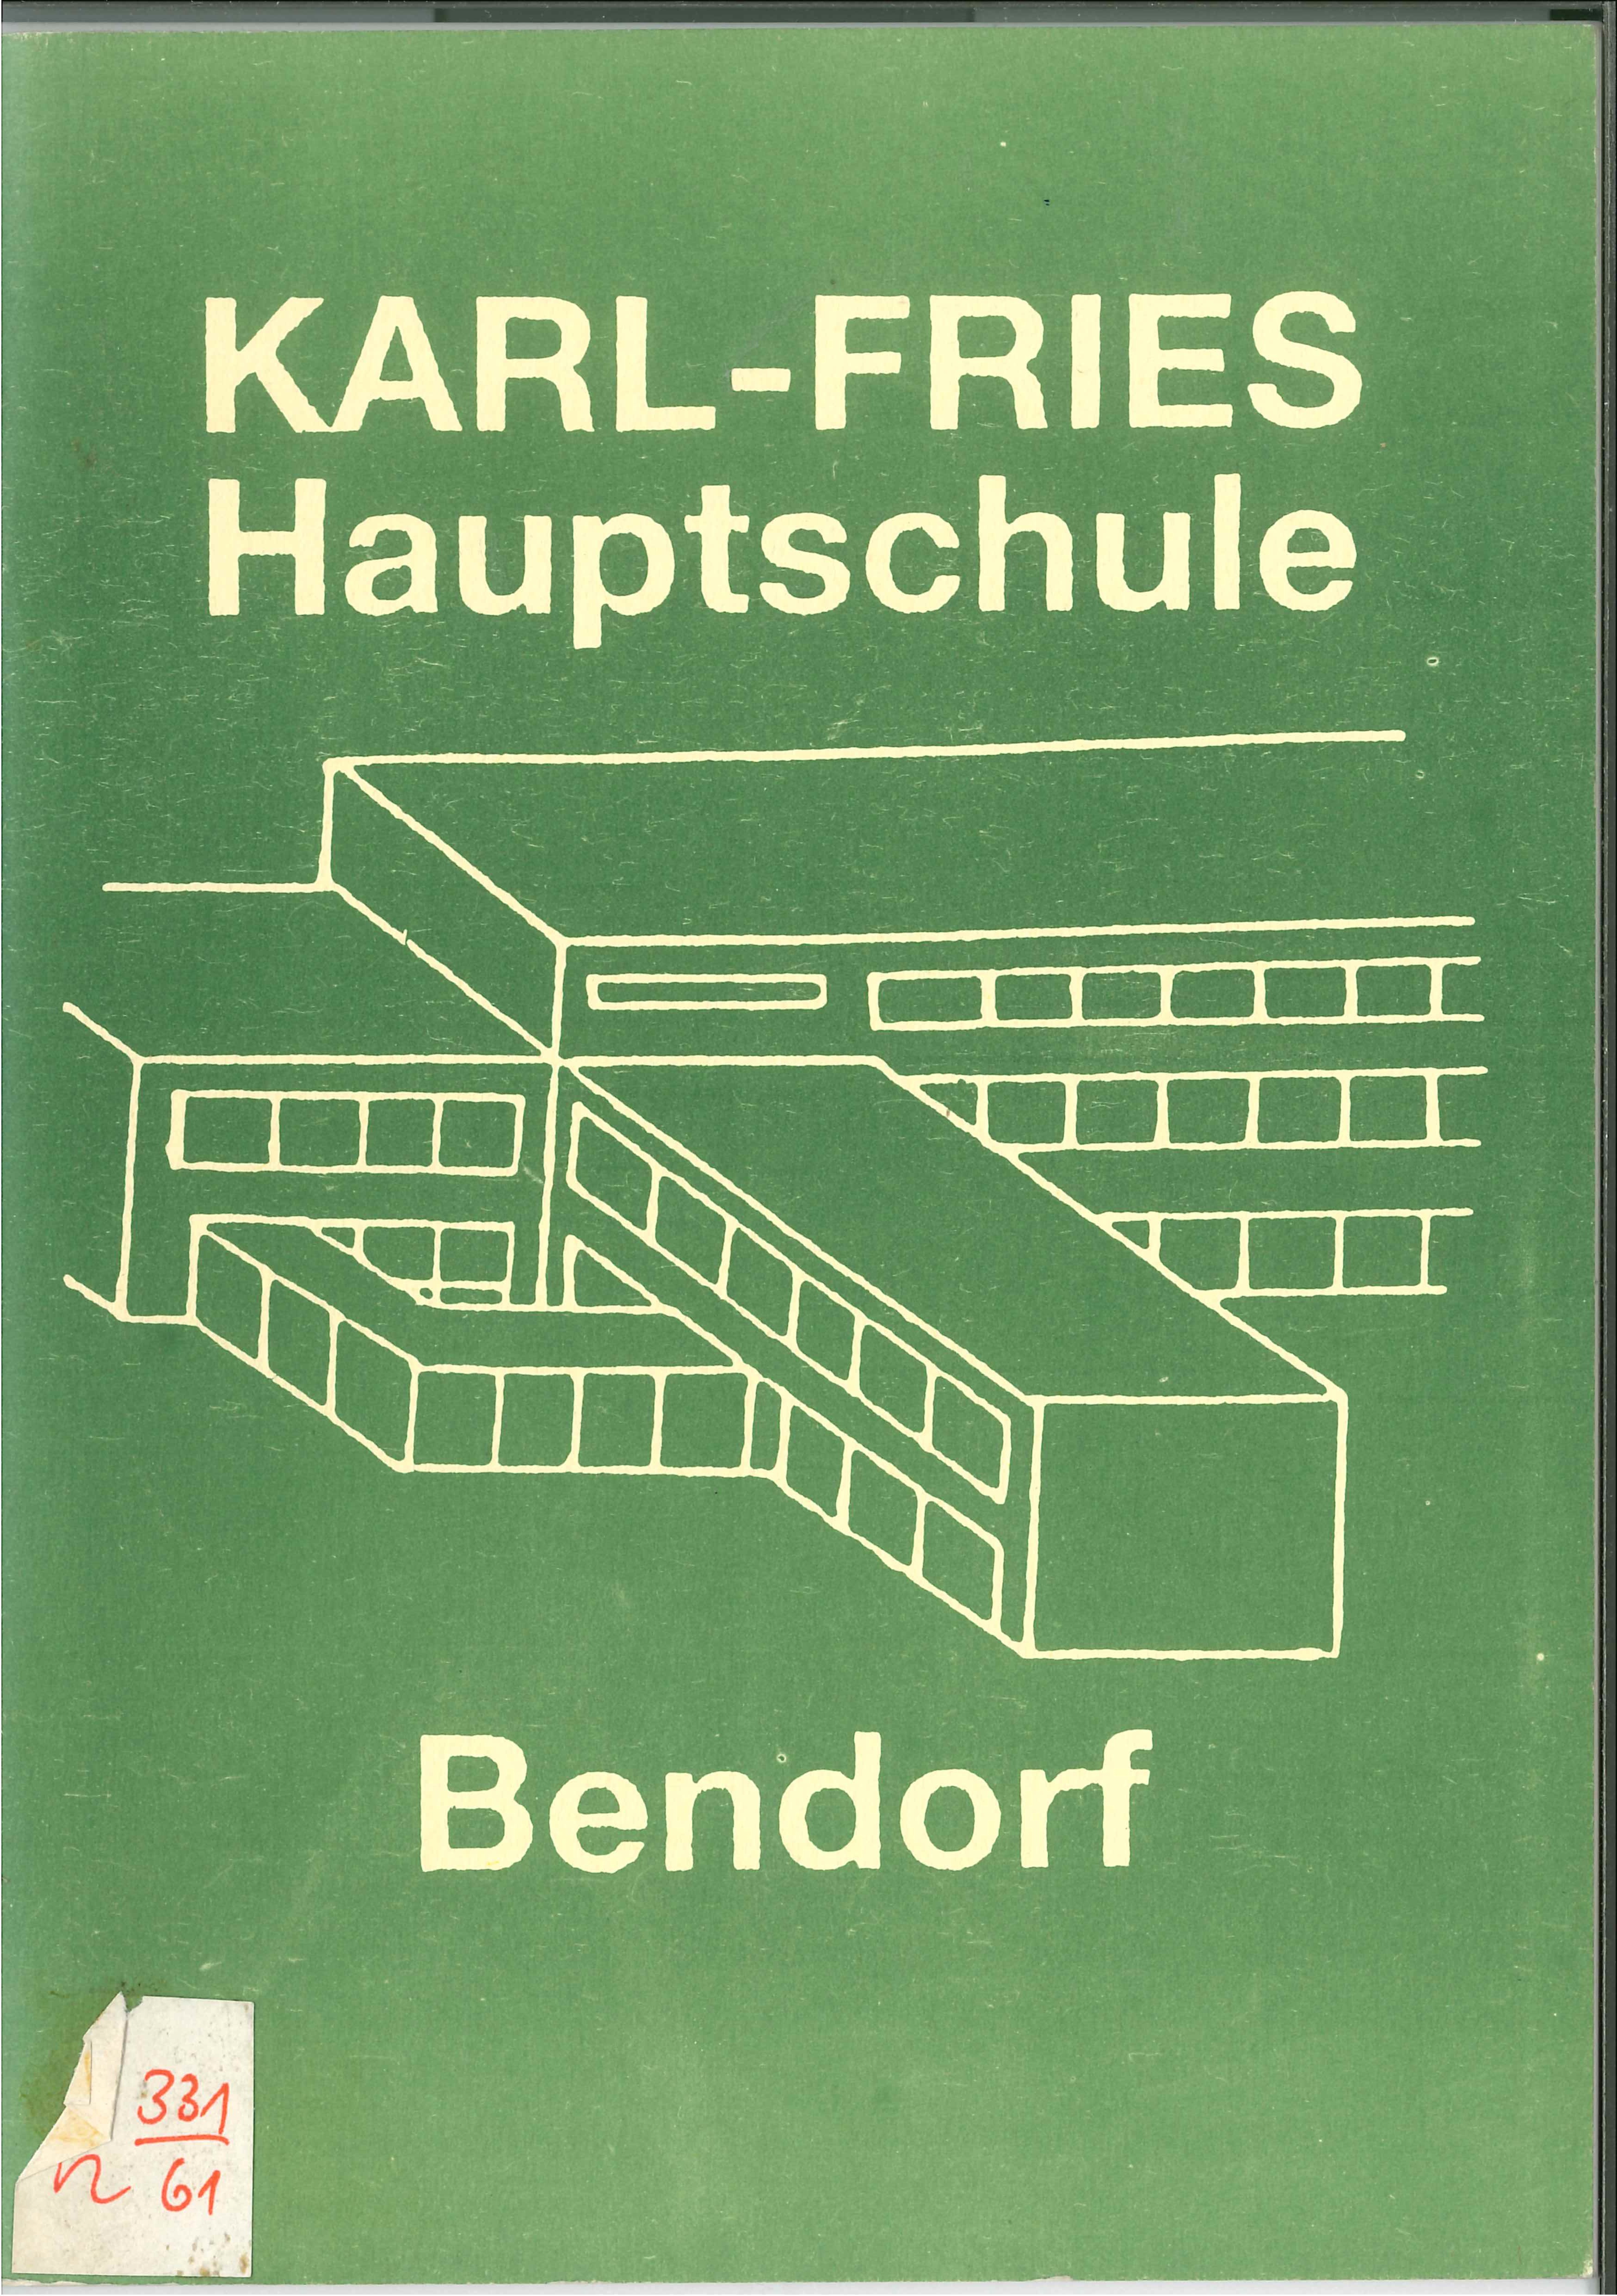 Festschrift Karl Fries Hauptschule Bendorf, 1989 (Rheinisches Eisenkunstguss-Museum CC BY-NC-SA)